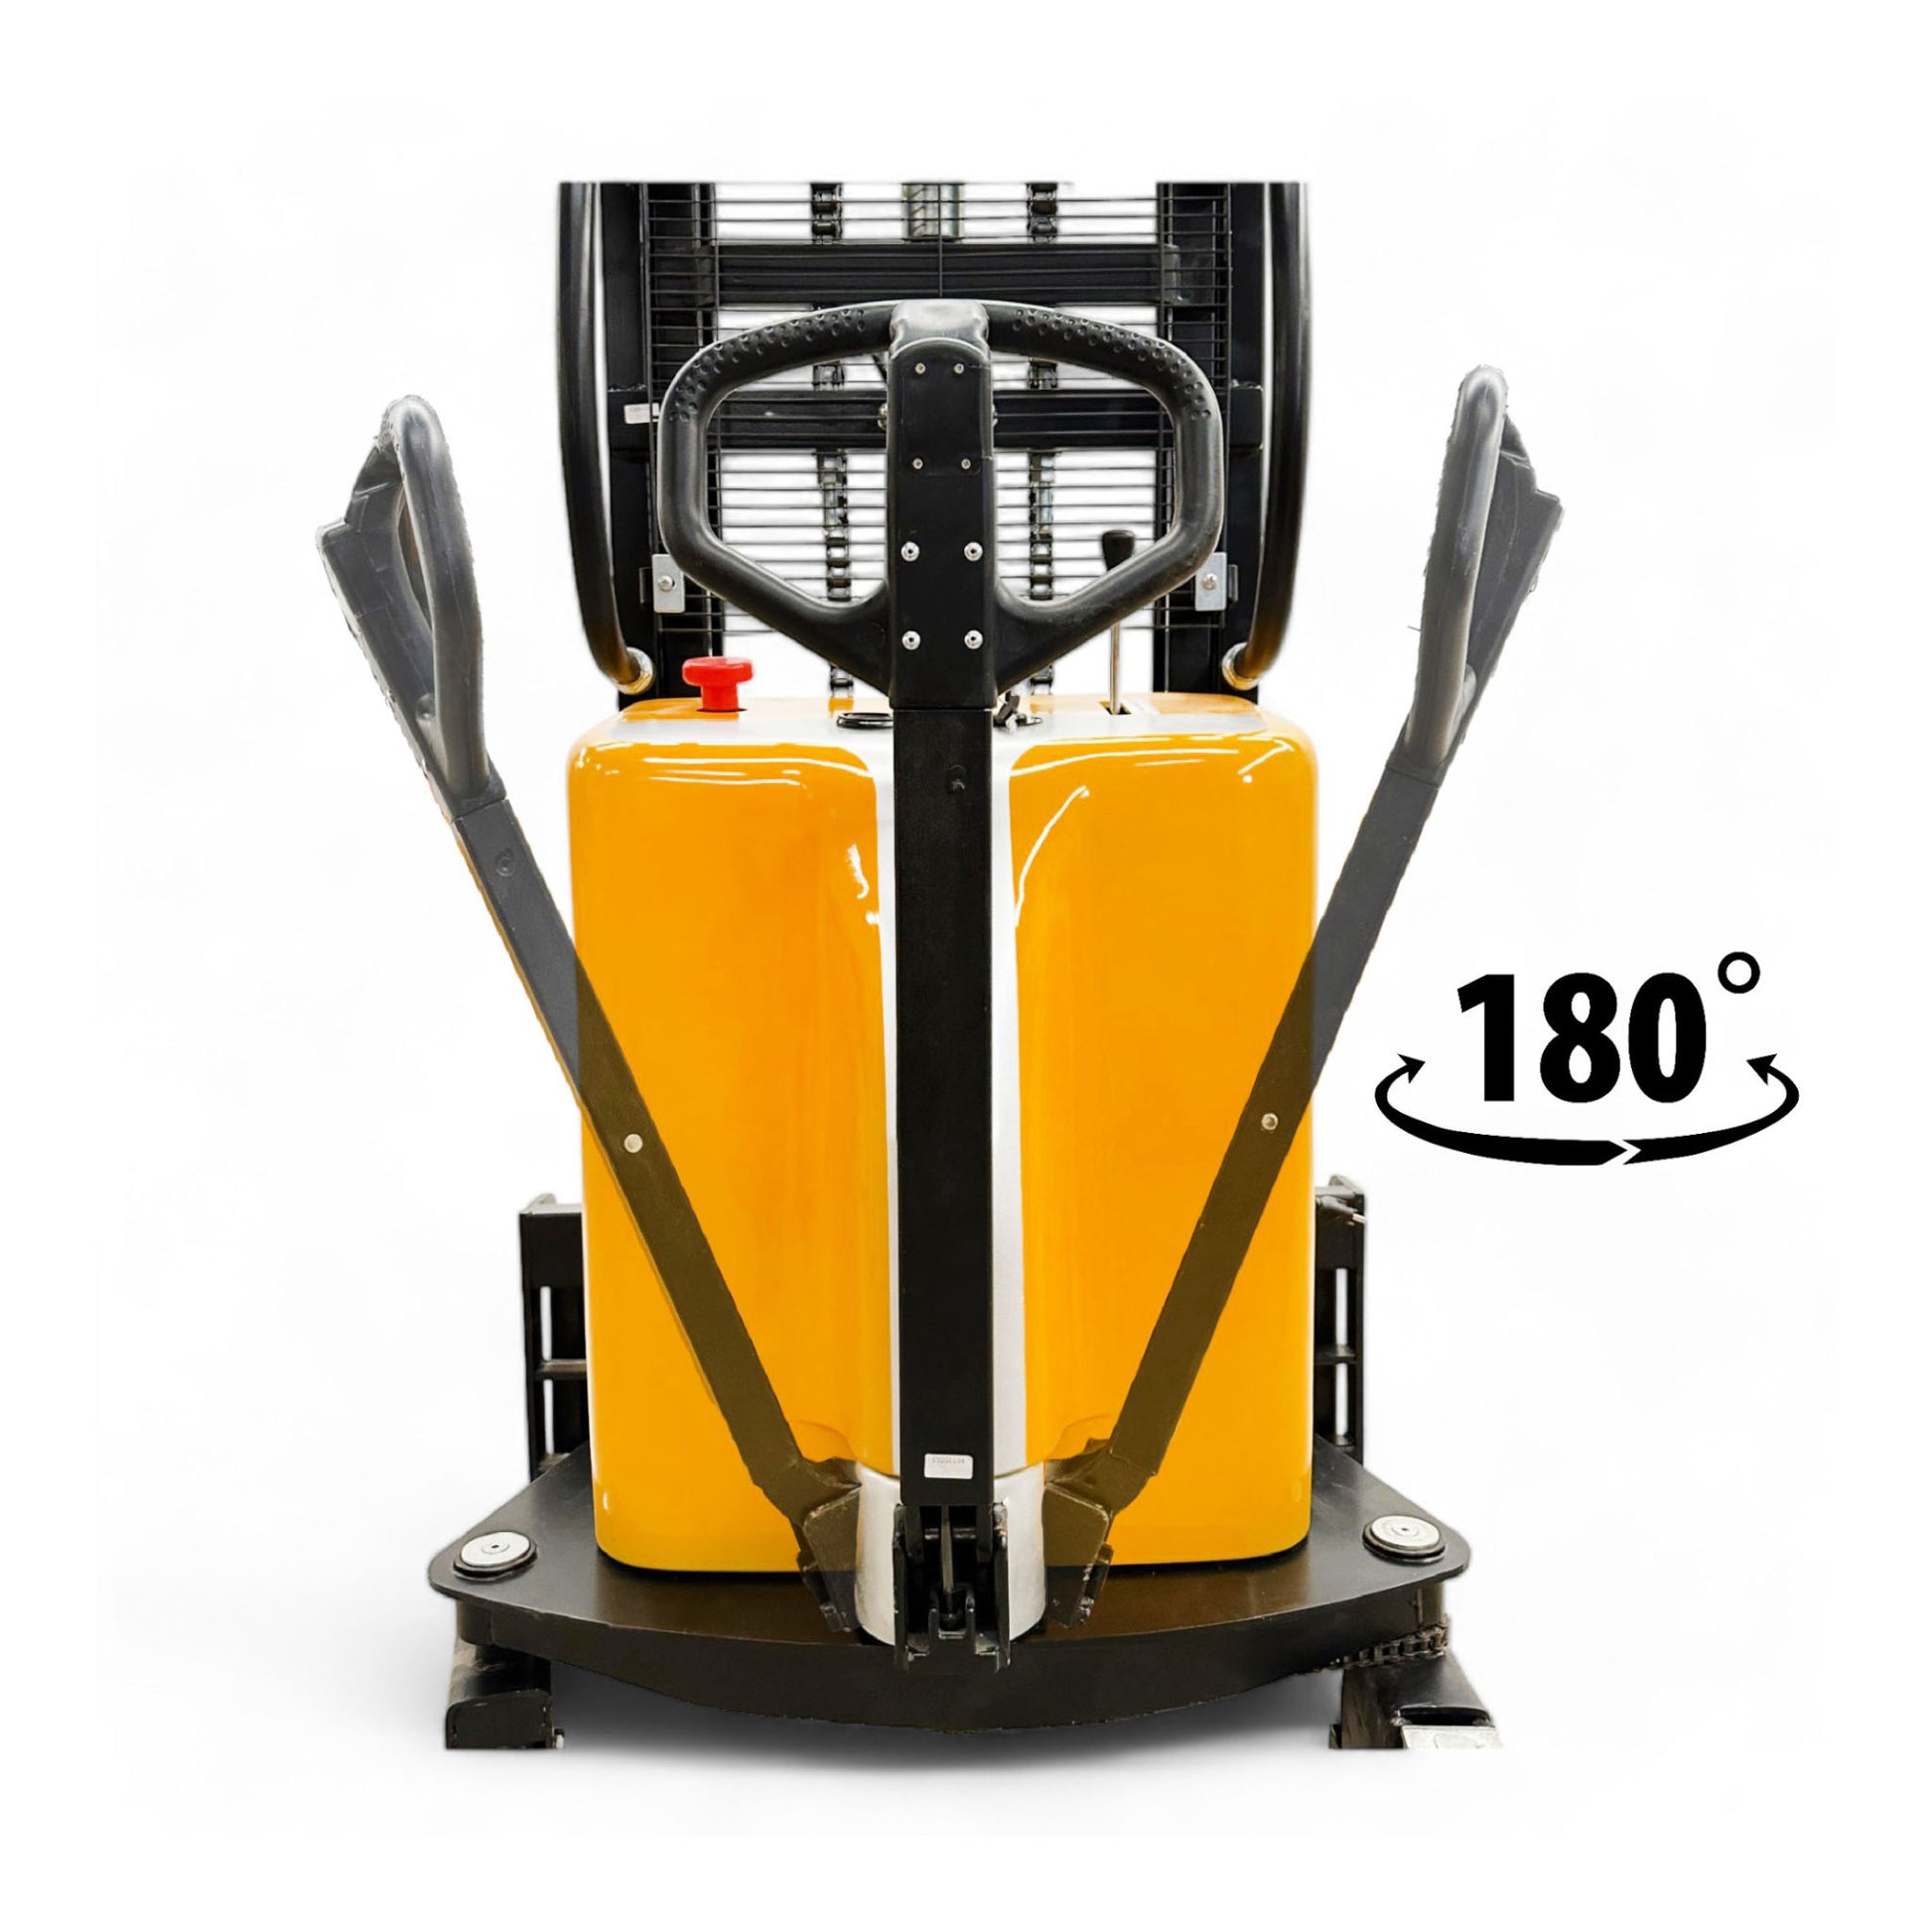 EMS1520 - Gerbeur semi-électrique à pattes fines 1500 kg (3307 lbs) + capacité 78''